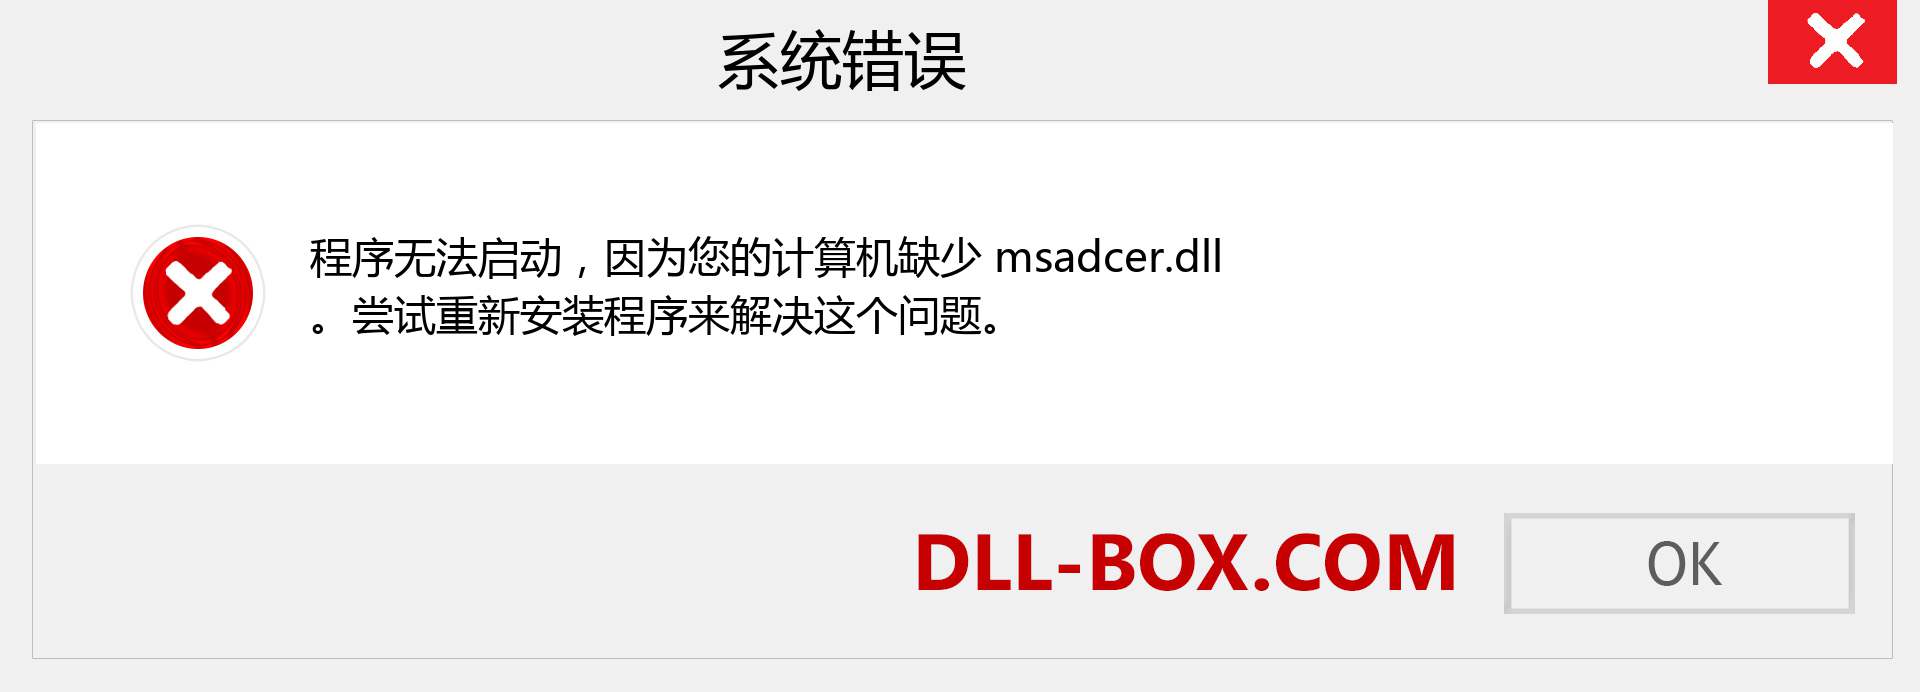 msadcer.dll 文件丢失？。 适用于 Windows 7、8、10 的下载 - 修复 Windows、照片、图像上的 msadcer dll 丢失错误